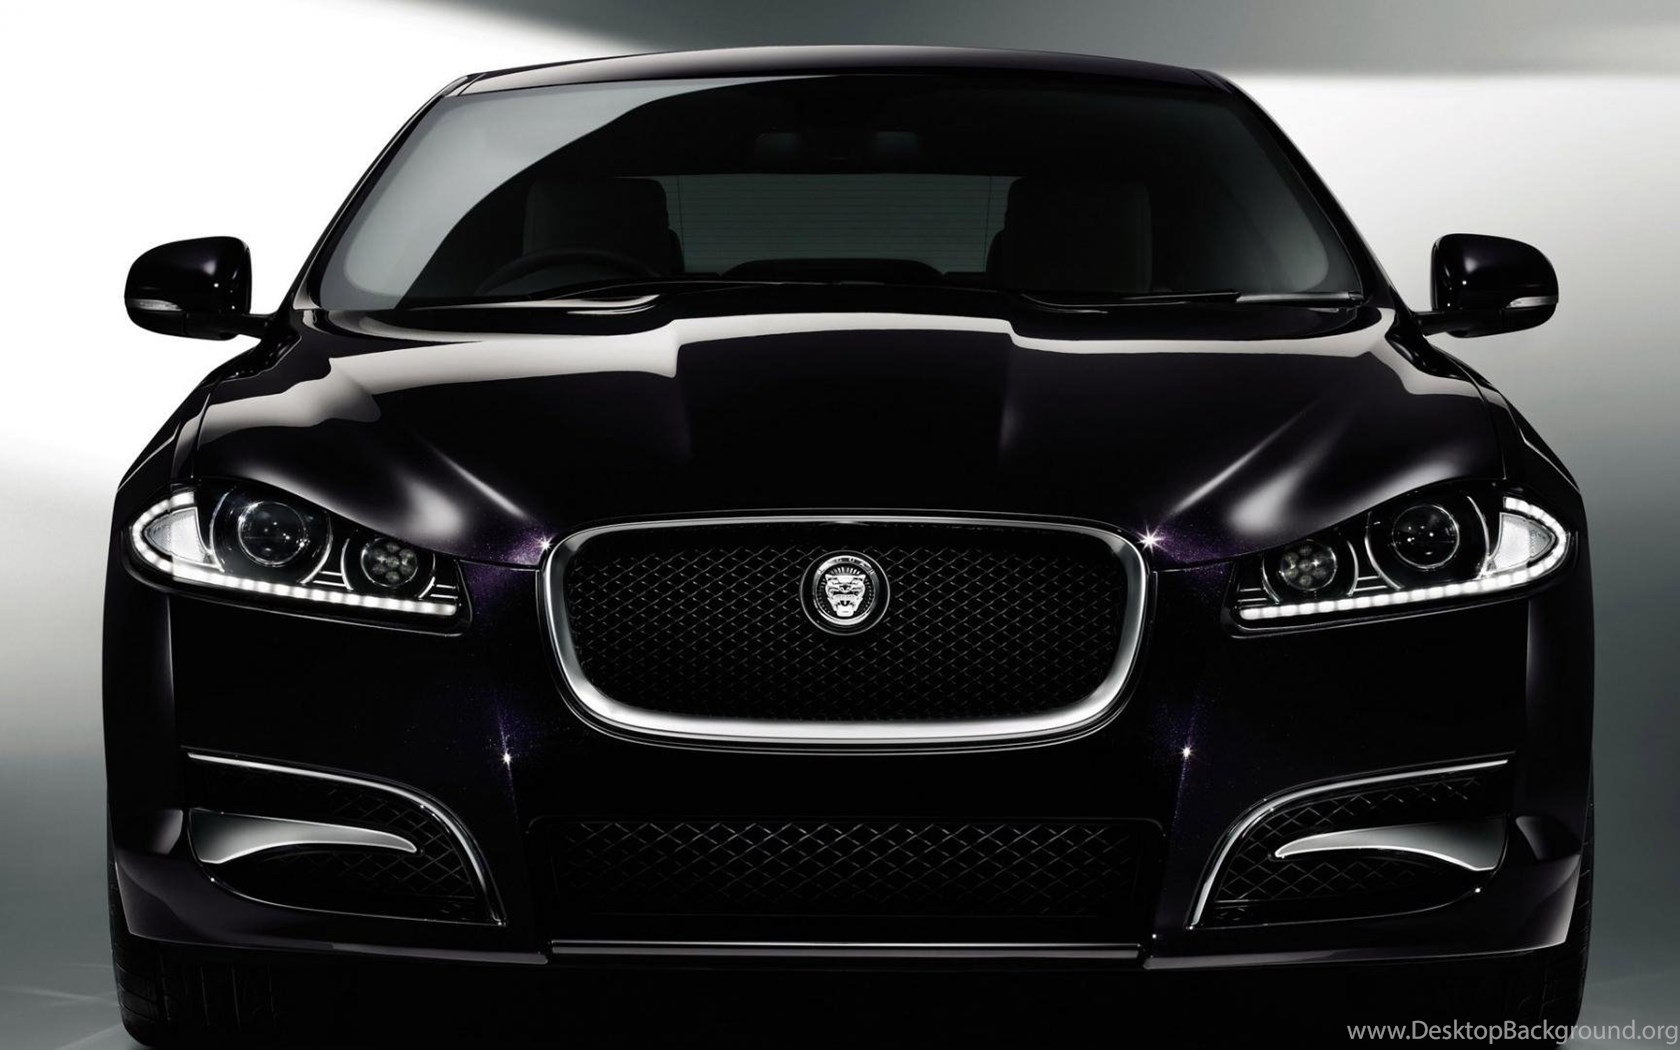 Black Cars Purple Vehicles Jaguar Xf Front View Wallpapers Desktop Images, Photos, Reviews